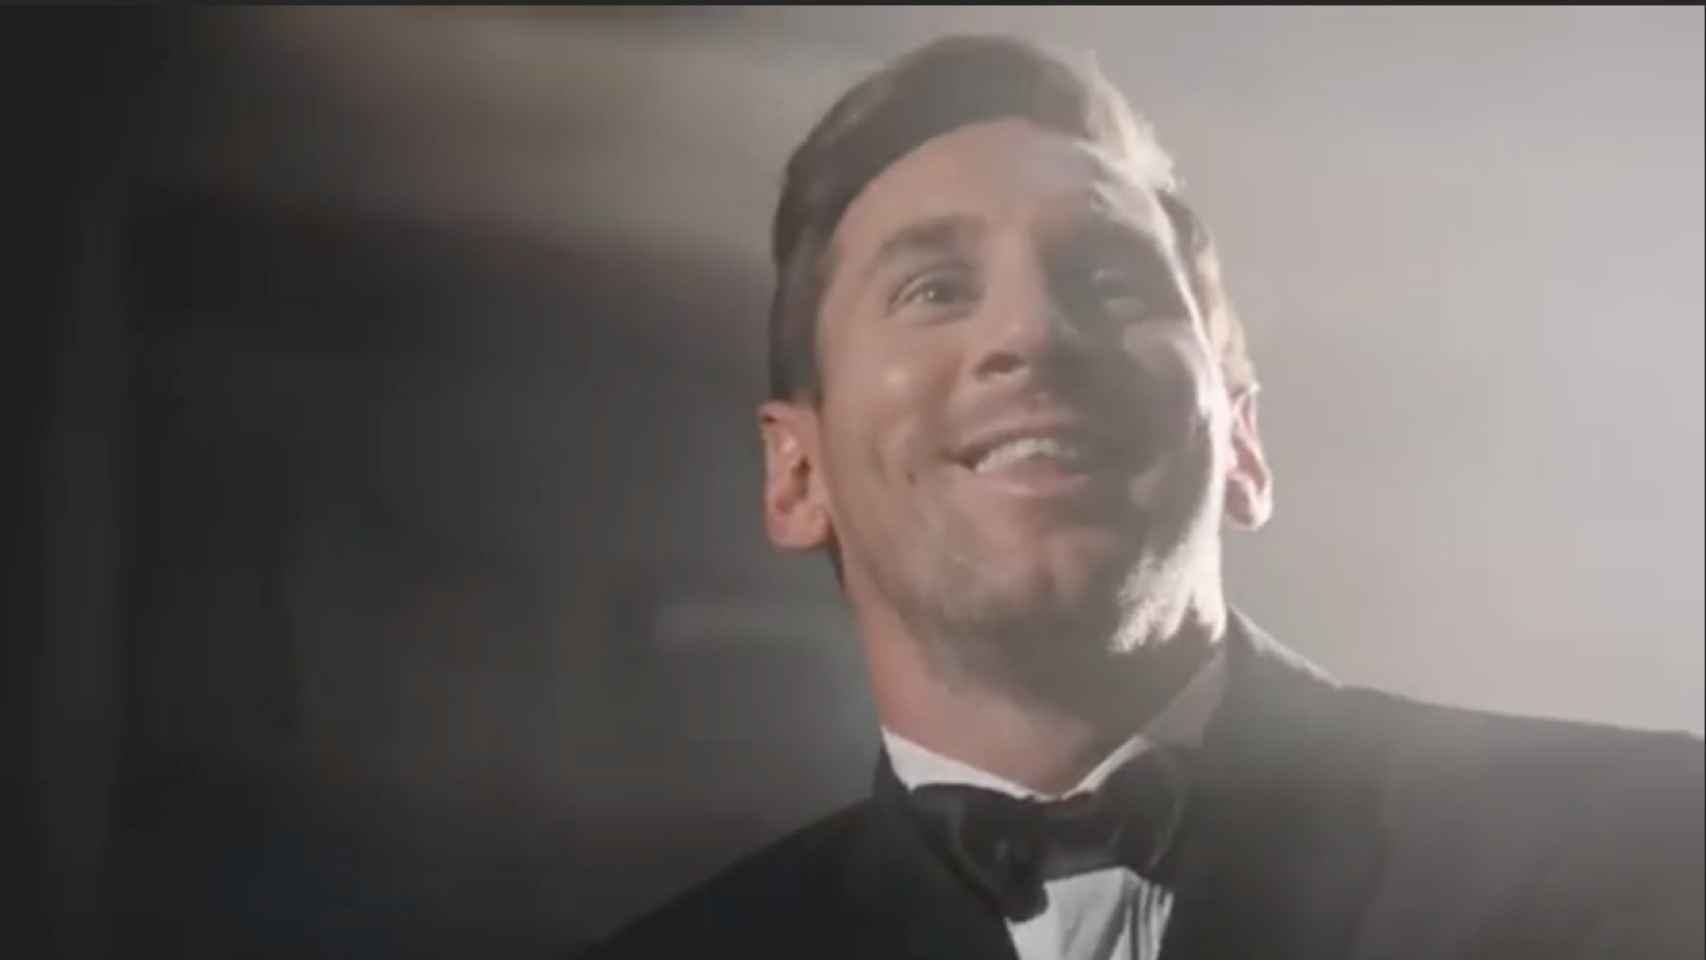 Leo Messi en el anuncios de Lays / INSTAGRAM